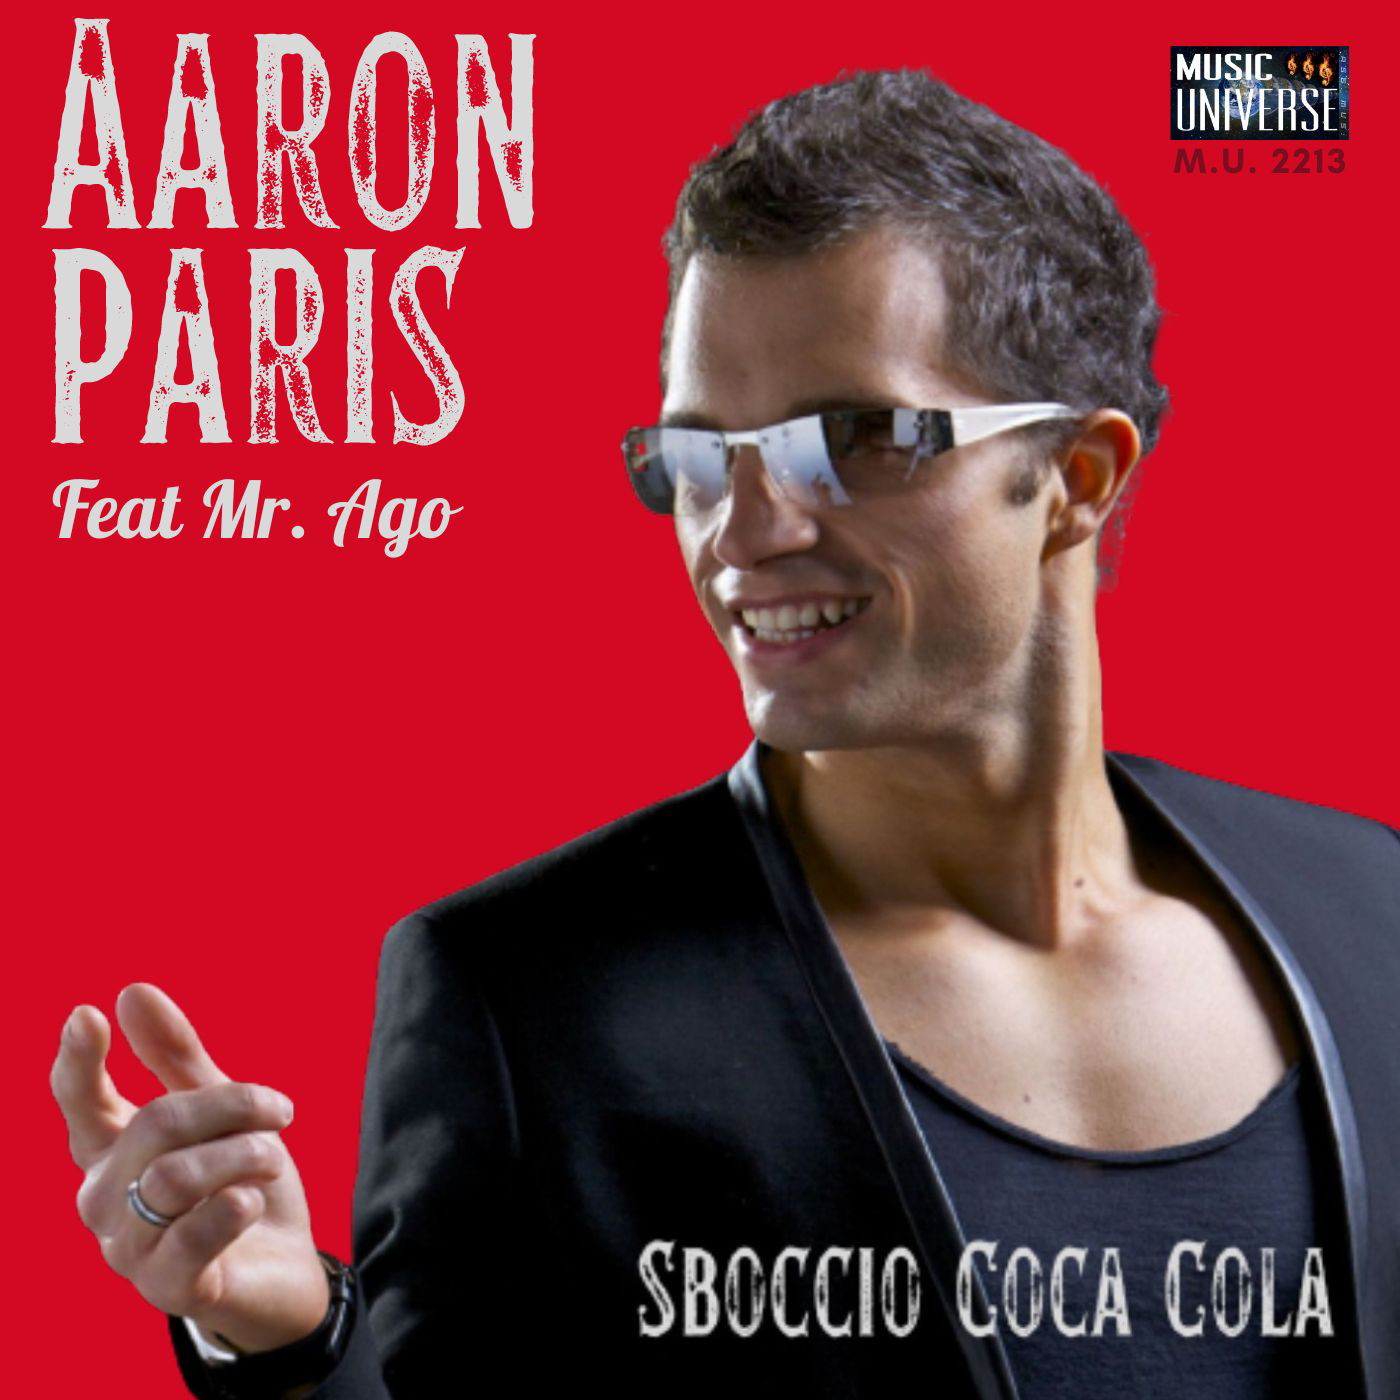 Aaron Paris: nelle discoteche piu’ sano divertimento e meno “sballo”.